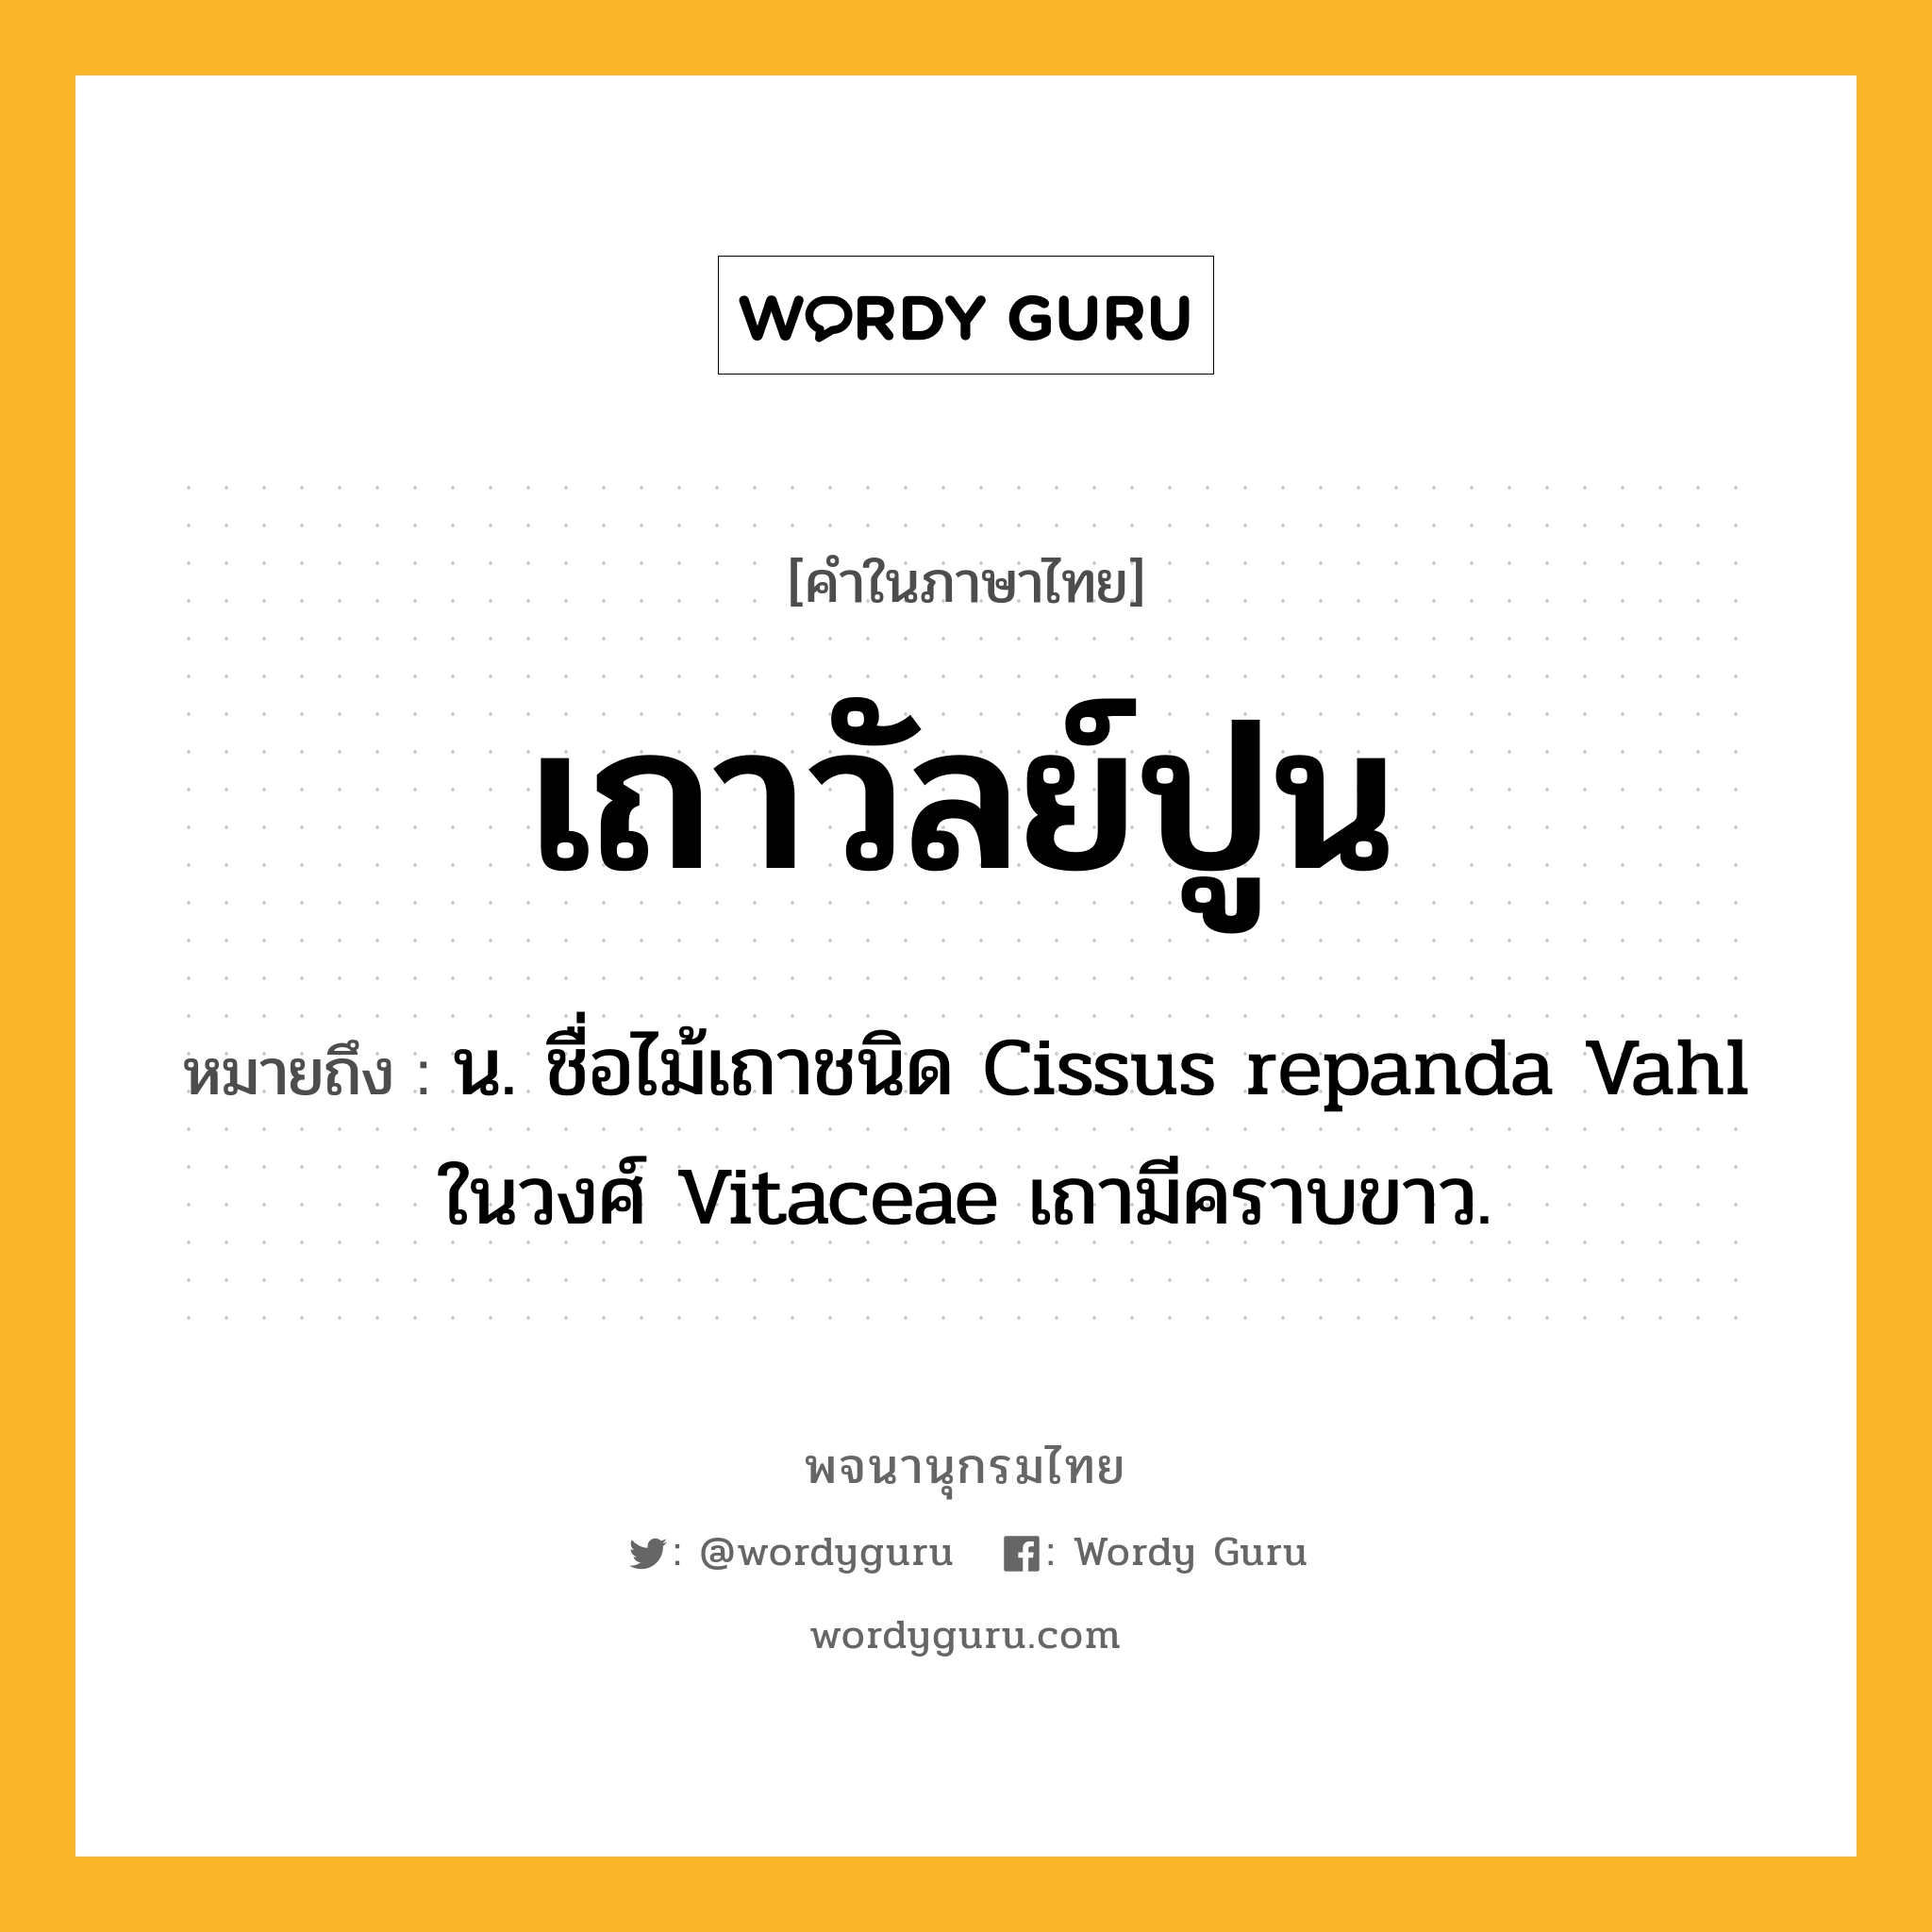 เถาวัลย์ปูน หมายถึงอะไร?, คำในภาษาไทย เถาวัลย์ปูน หมายถึง น. ชื่อไม้เถาชนิด Cissus repanda Vahl ในวงศ์ Vitaceae เถามีคราบขาว.